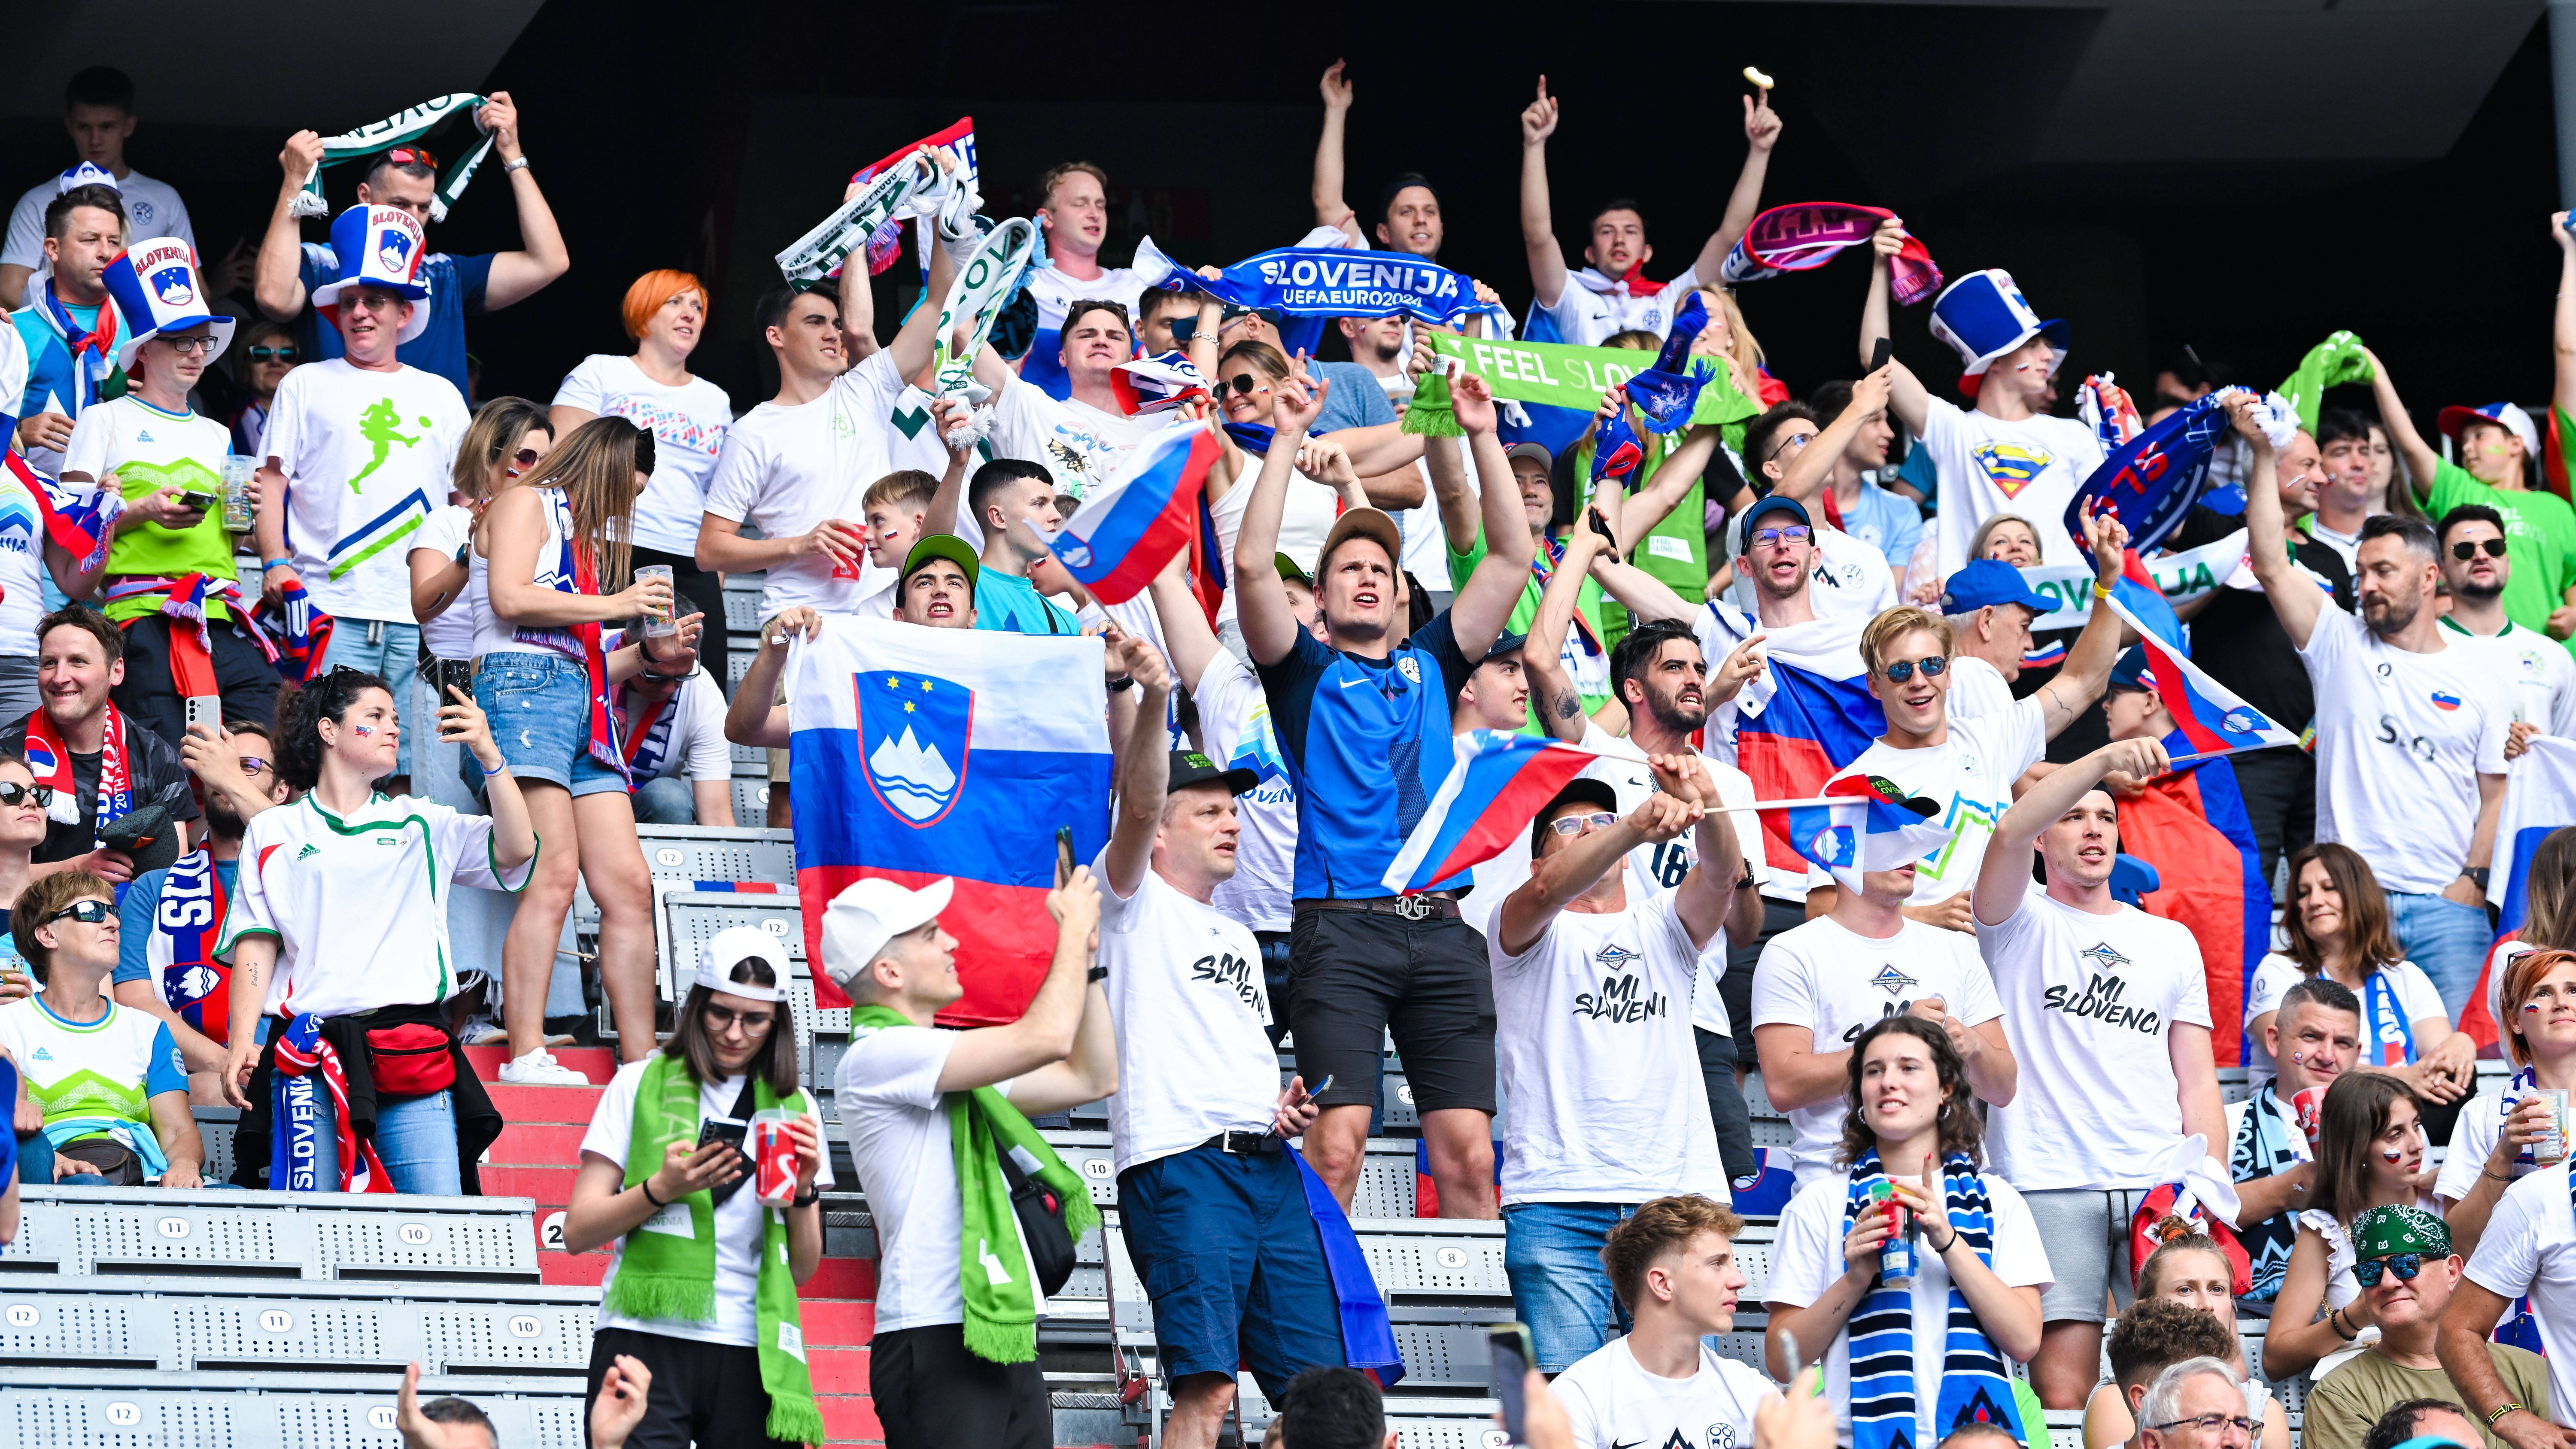 <strong>Slowenische Fans warten auf ihre EM-Helden</strong><br>Natürlich haben sich auch die slowenischen Fans frühzeitig in der Arena eingefunden, um mächtig Stimmung zu machen. Immerhin ist ihr Team erst zum zweiten Mal in der EM-Geschichte vertreten und jedes Spiel ein besonderes.